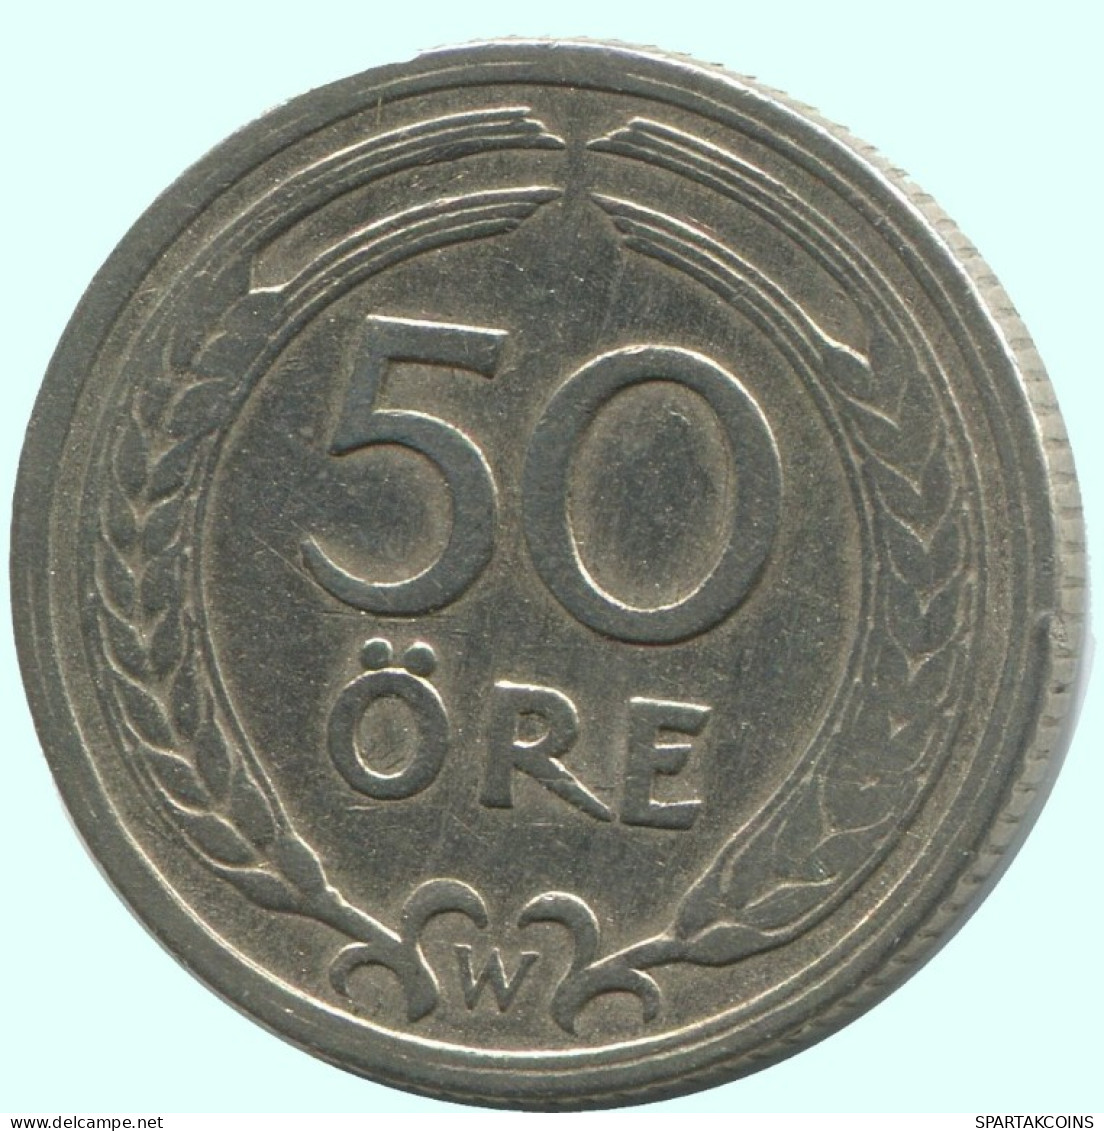 50 ORE 1921 SWEDEN Coin #AC692.2.U.A - Suède